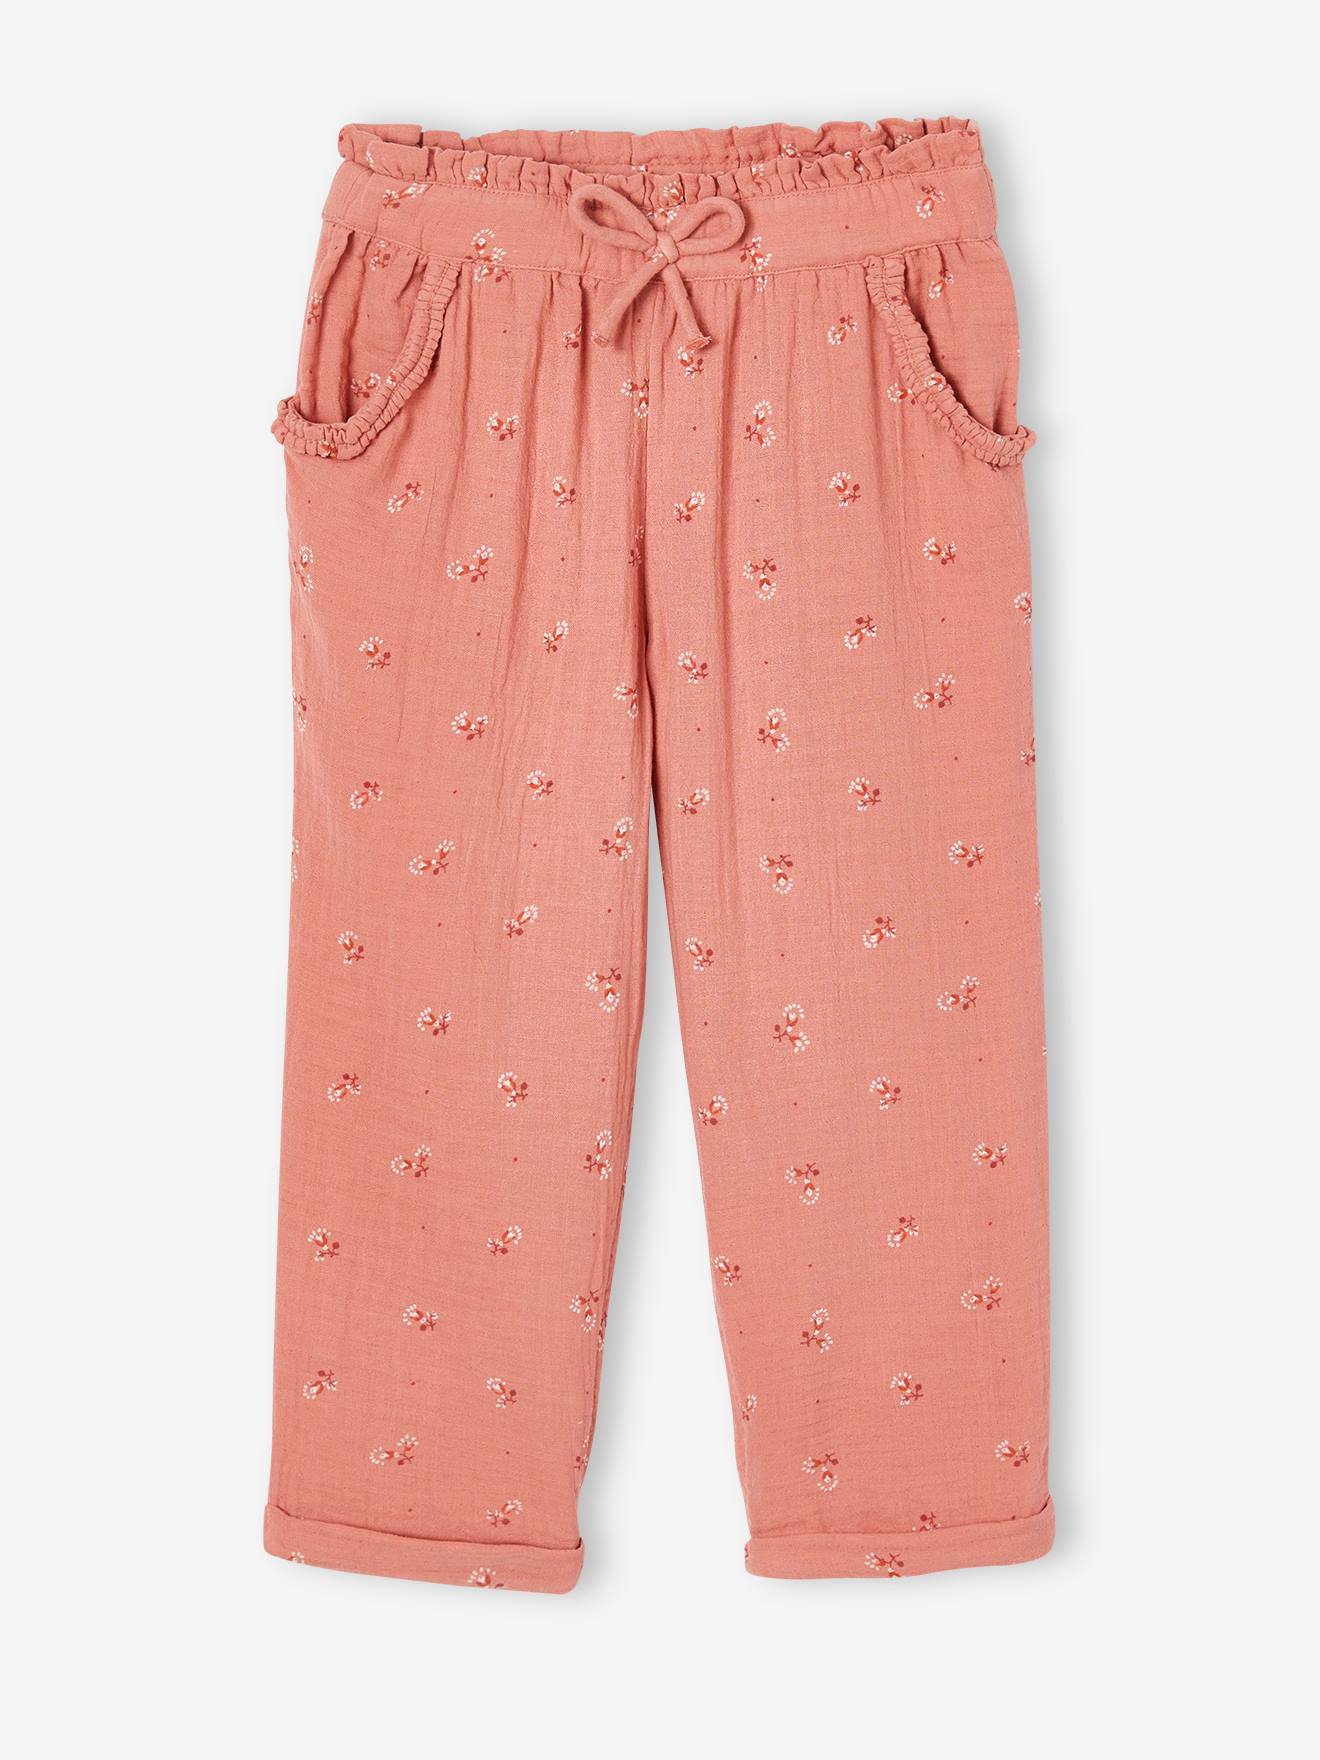 VERTBAUDET Pantalón pesquero de gasa de algodón estampado de flores, para niña rosado